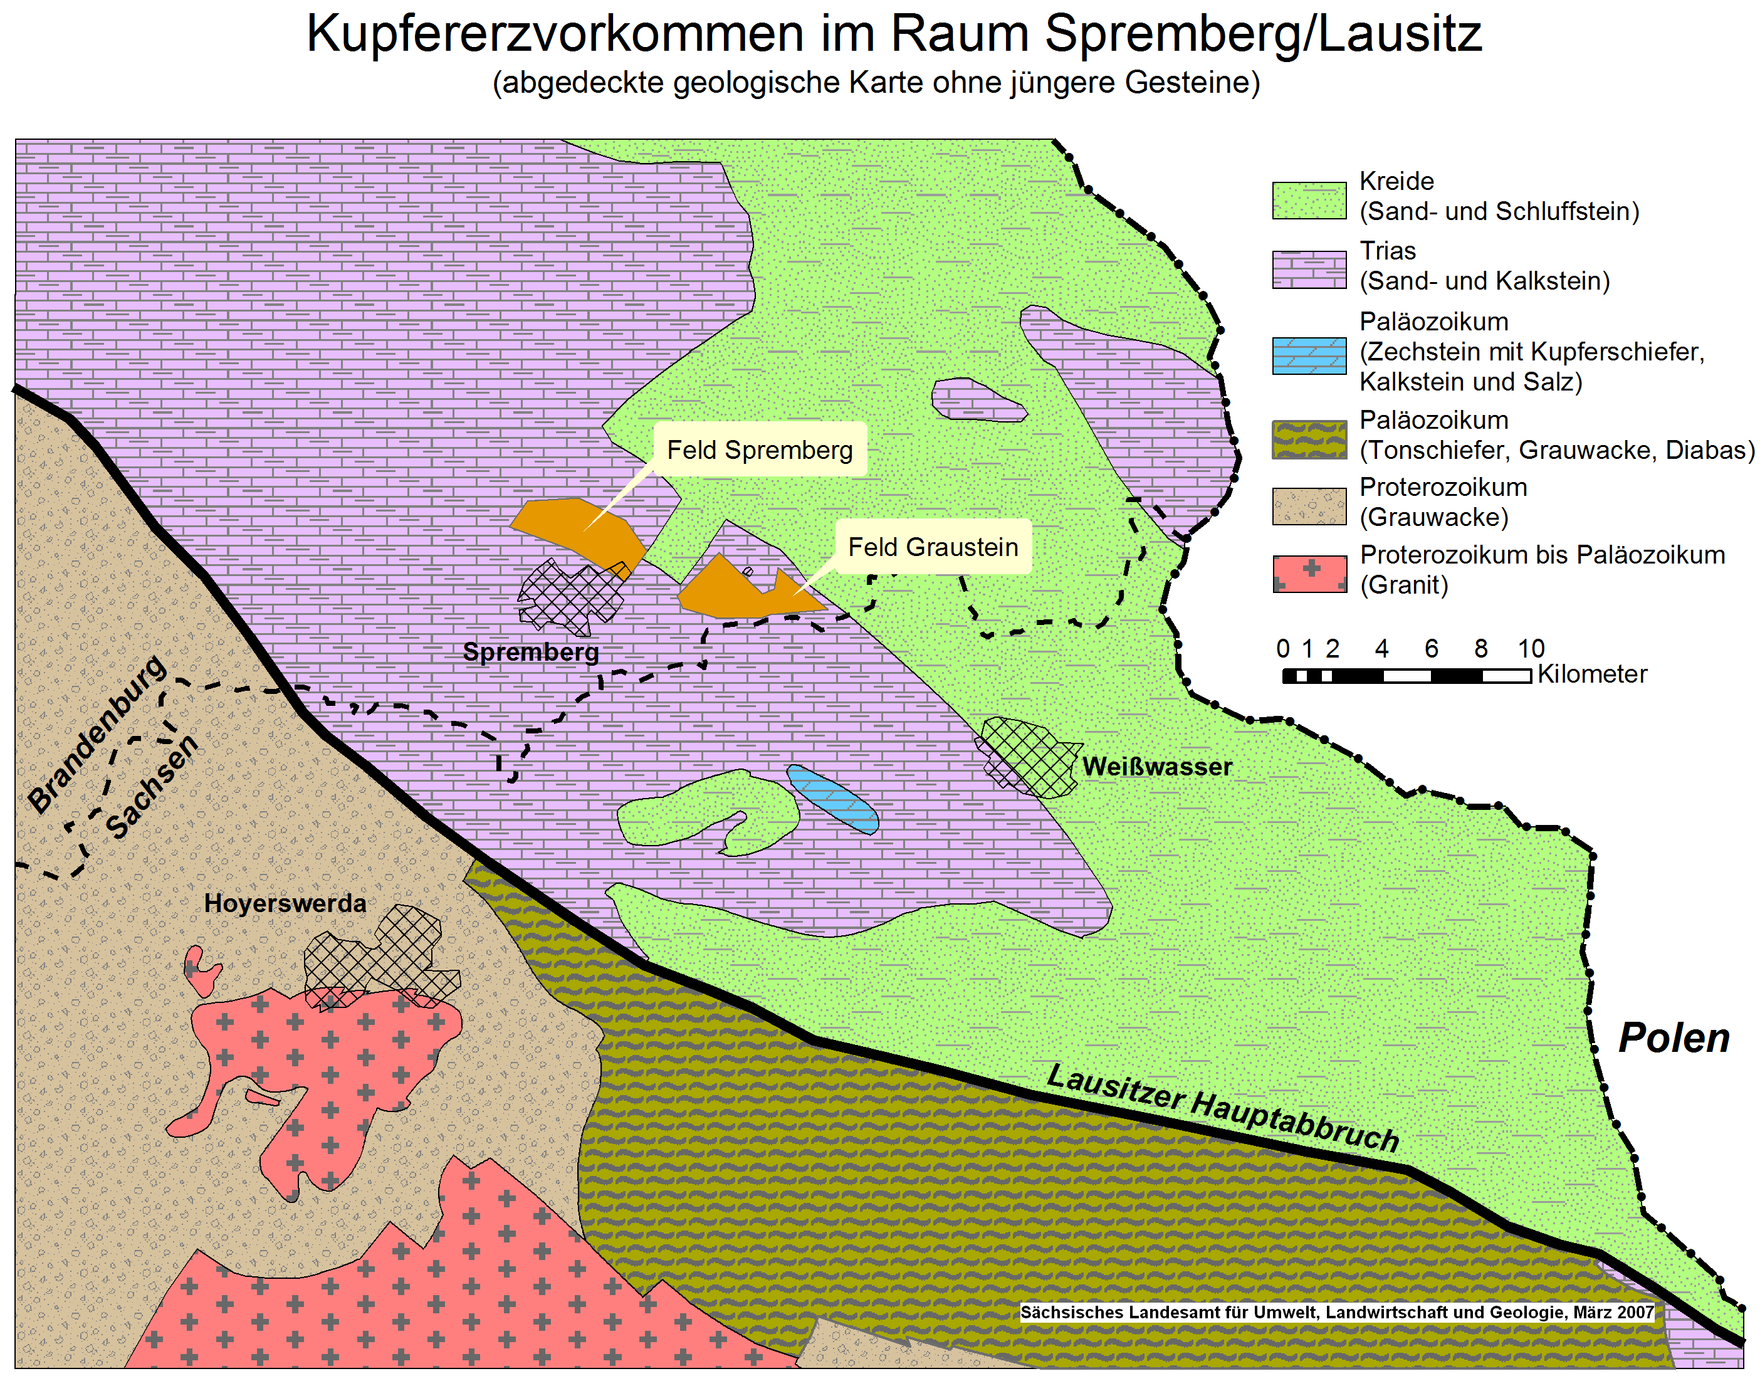 Geologische Karte mit Kupfererzvorkommen im Raum Spremberg/Lausitz